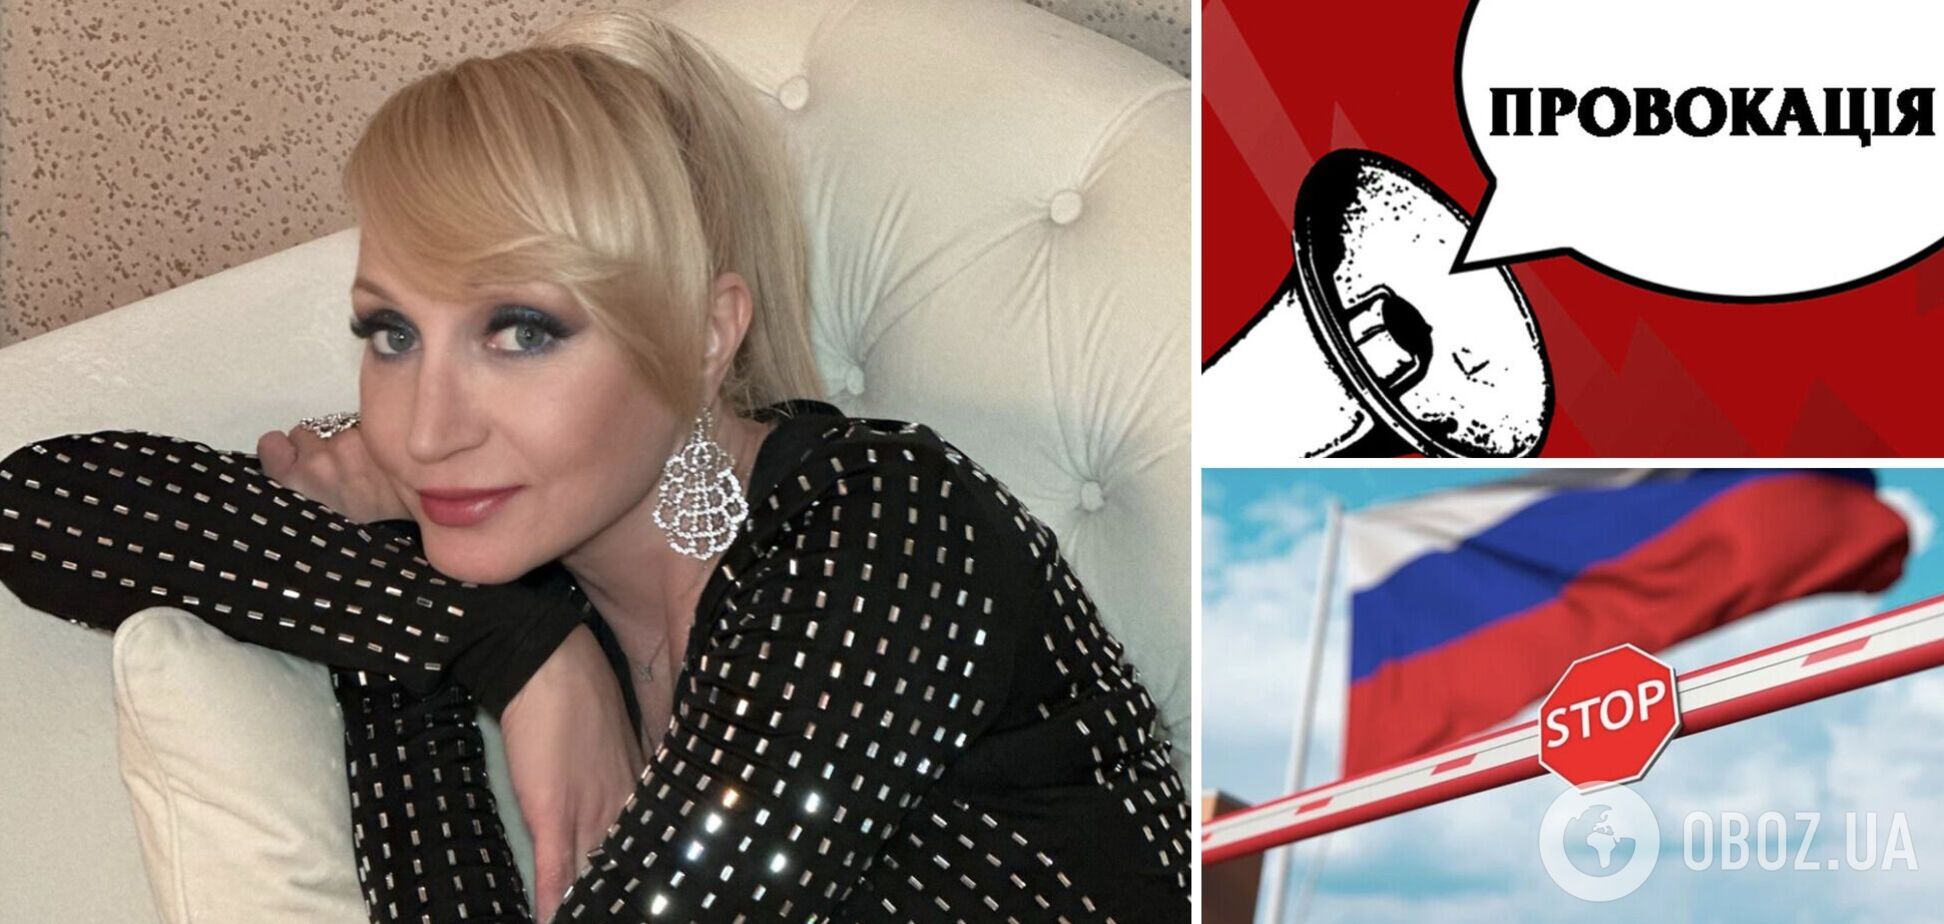 Кристина Орбакайте отказалась возвращаться в Россию и заявила о готовящихся против нее провокациях